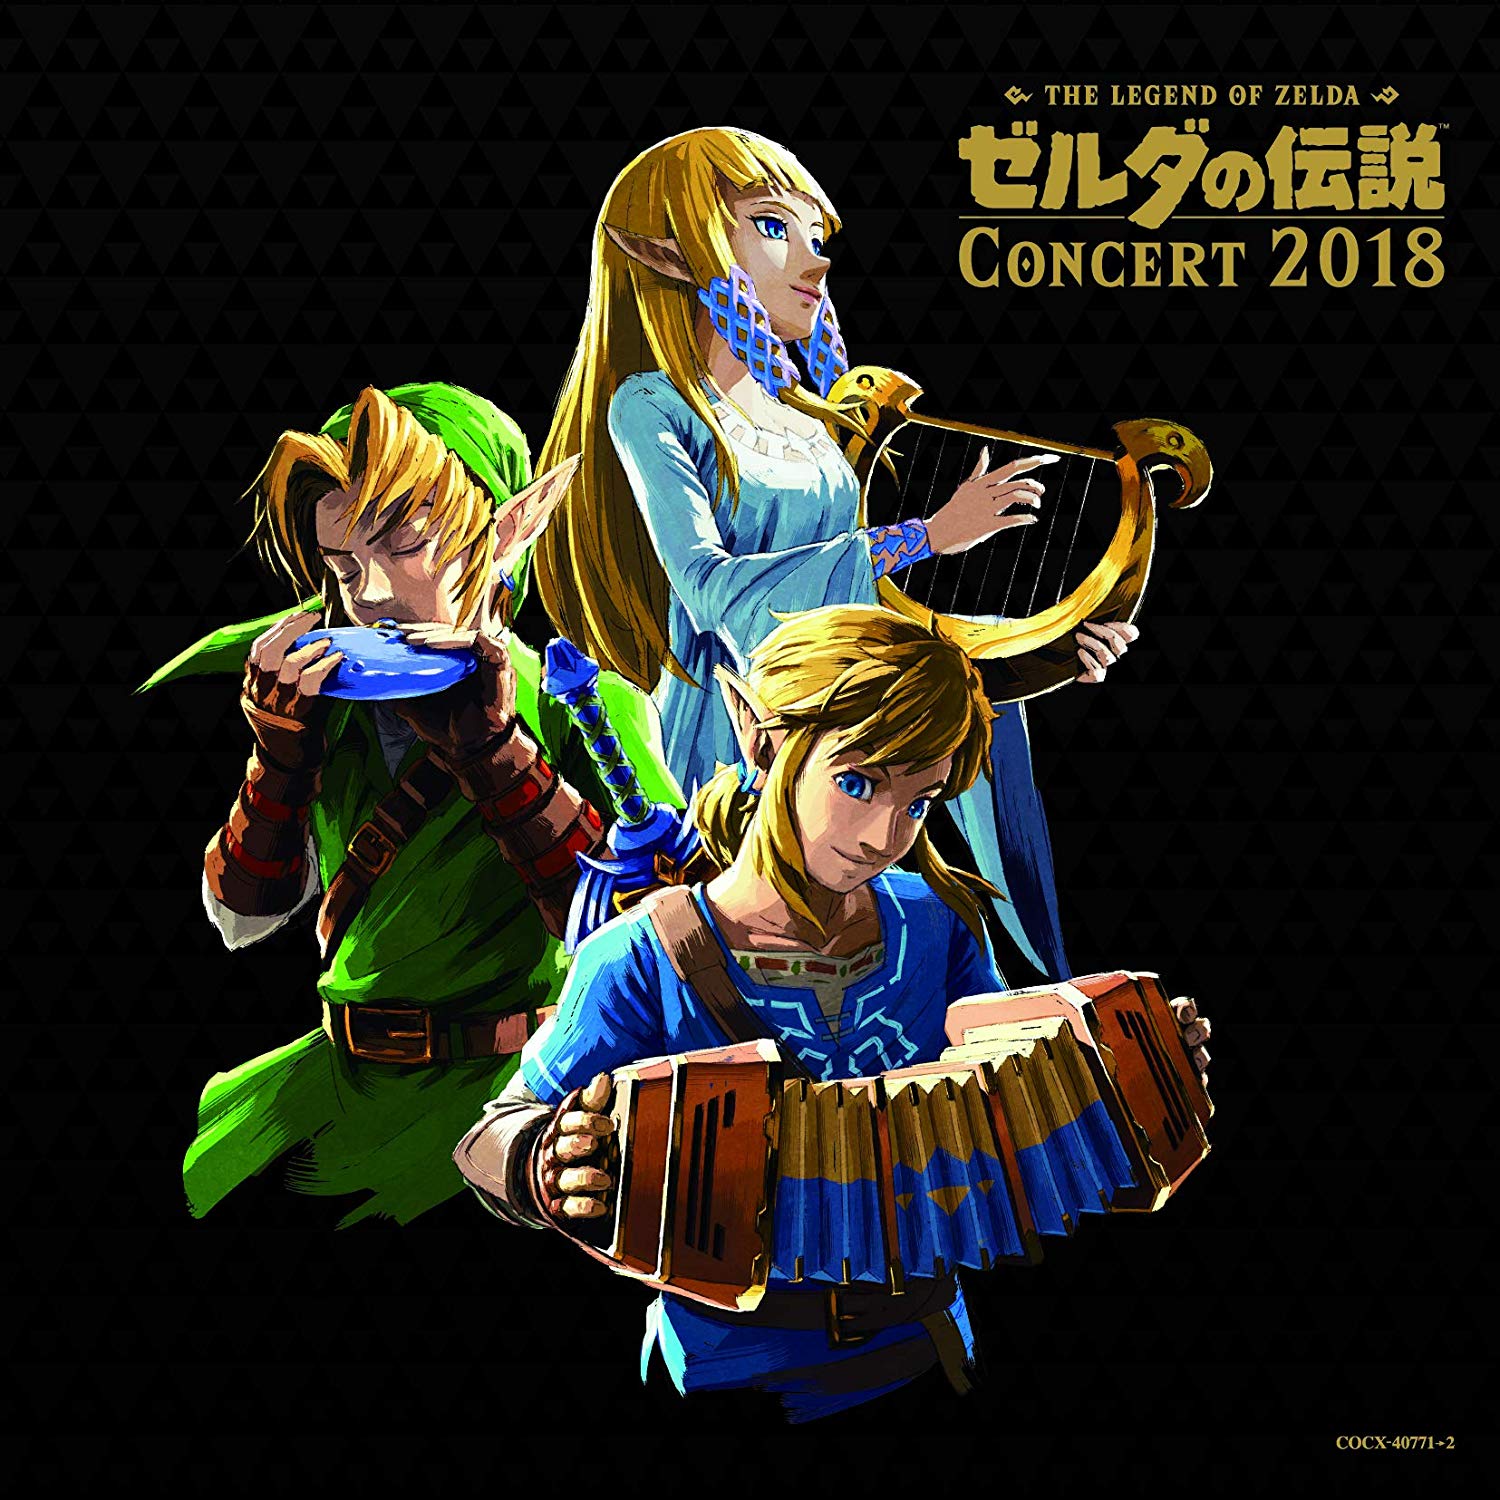 Sun's Song | 8x10 in Poster | The Legend of Zelda